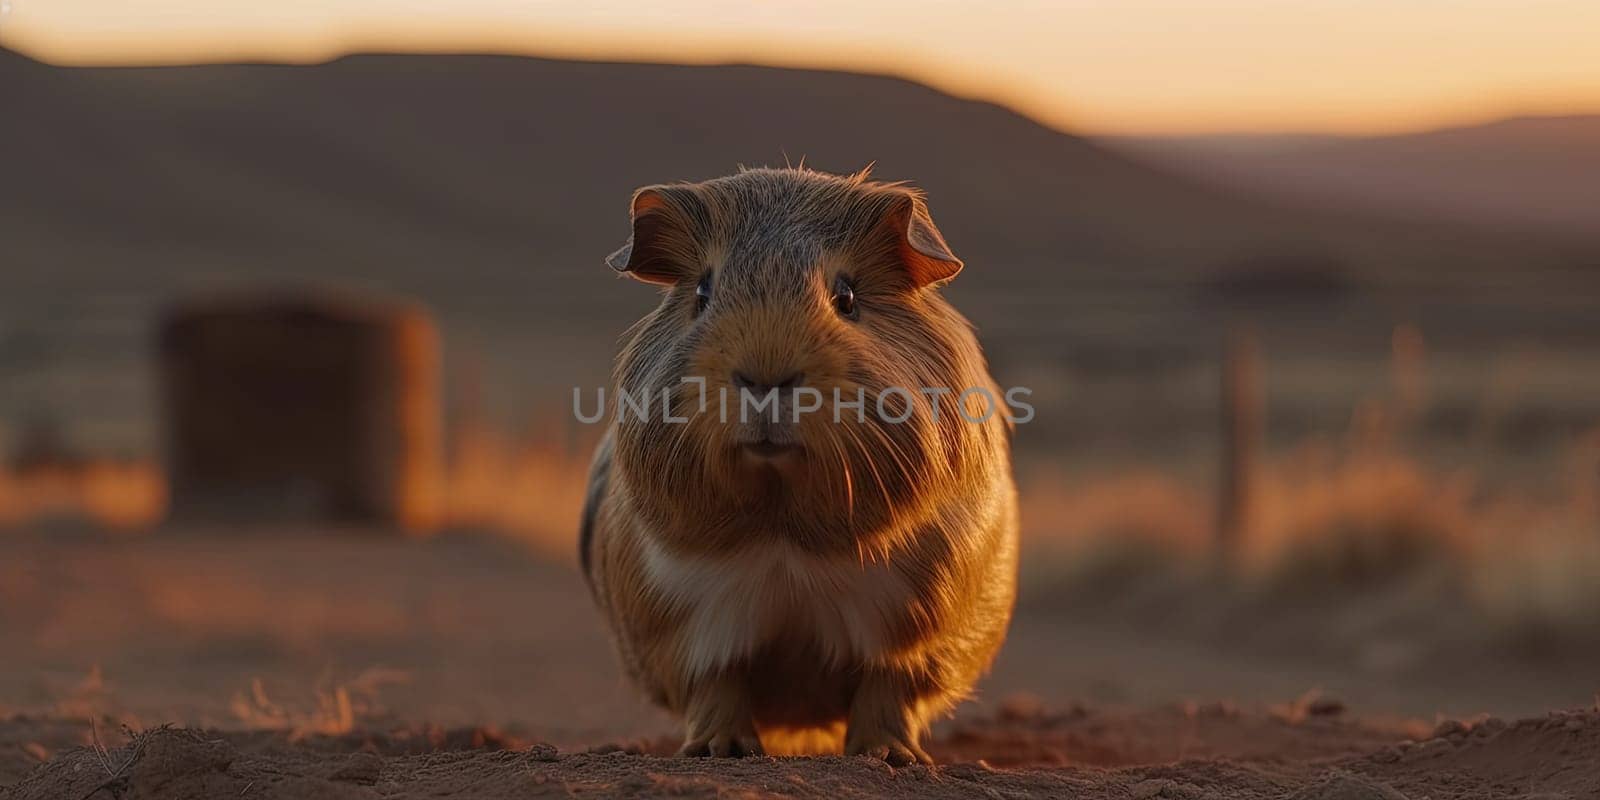 Cute Guinea Pig On A Ground by GekaSkr